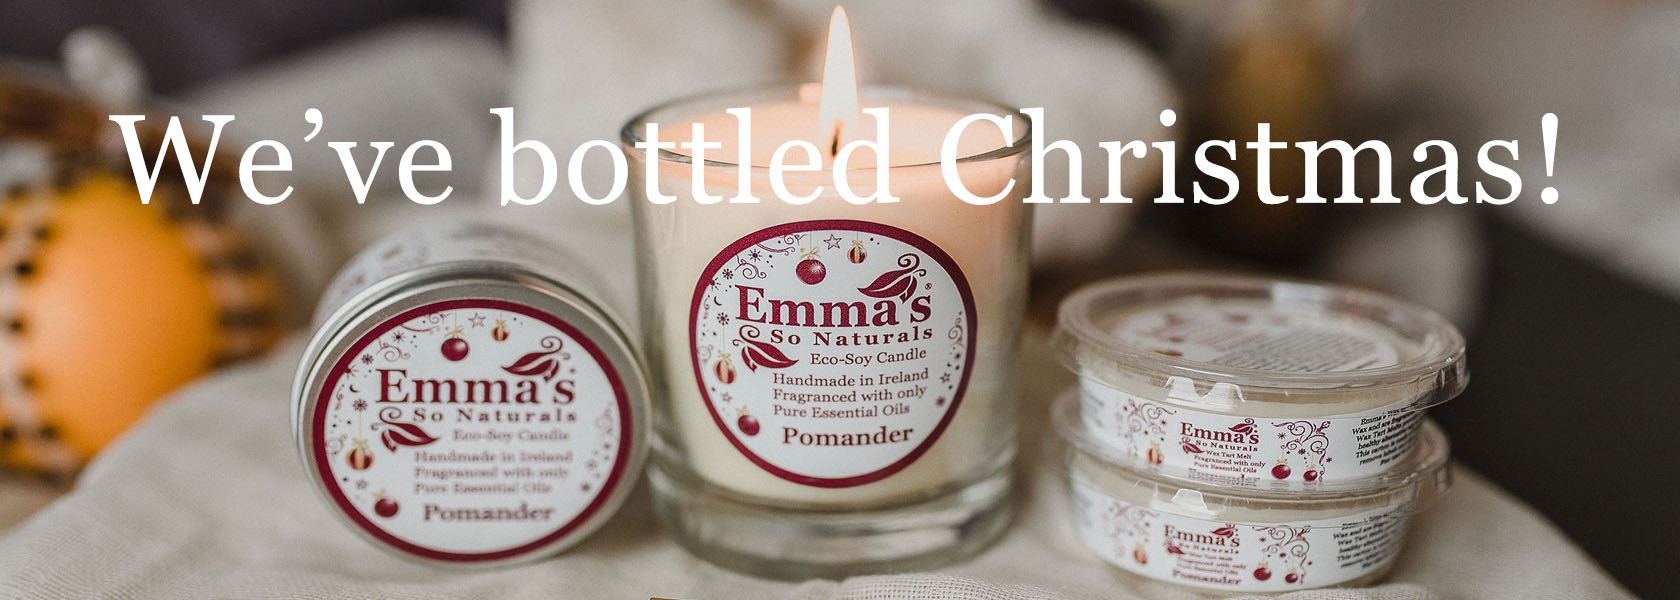 Emma's So Naturals Pomander Candles collection We've Bottled Christmas